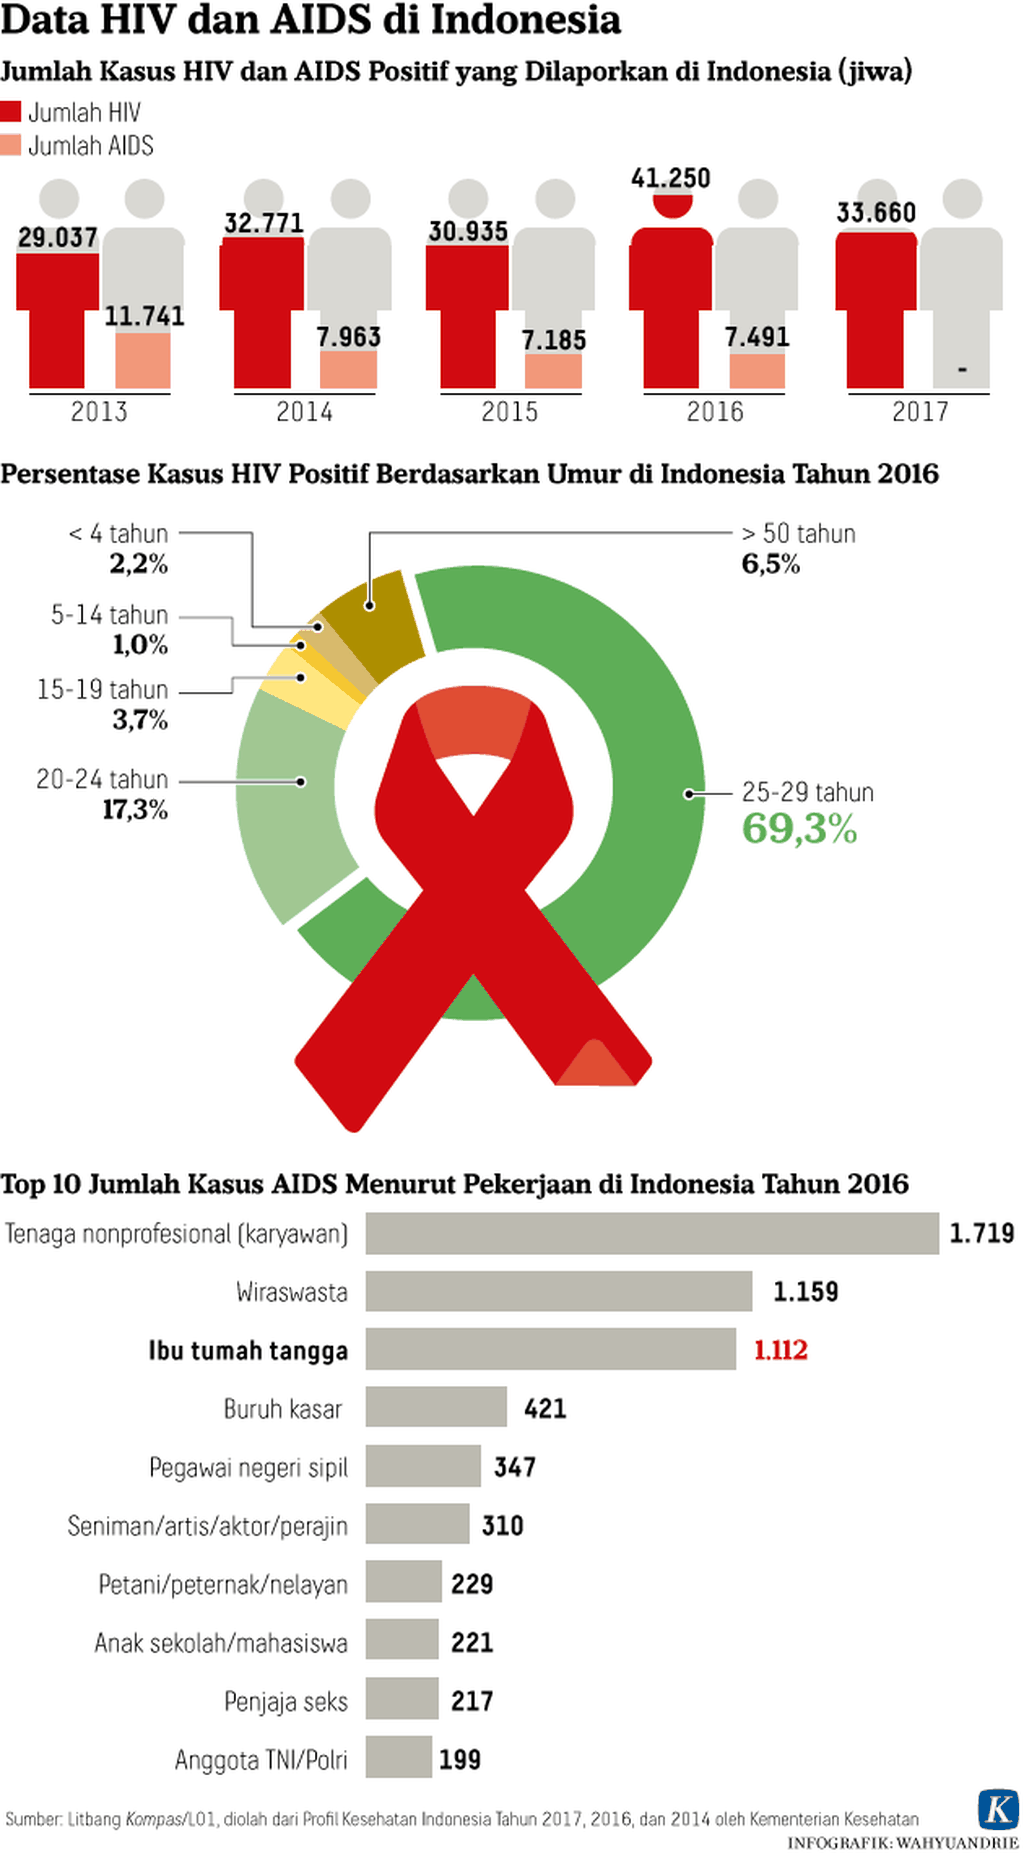 https://cdn-assetd.kompas.id/sUyp95s8EnTTPiuYYw45c4DiBNo=/1024x1856/https%3A%2F%2Fkompas.id%2Fwp-content%2Fuploads%2F2018%2F09%2F20180920-Data-HIV-dan-AIDS-di-Indonesia-mumed_1537433951.png